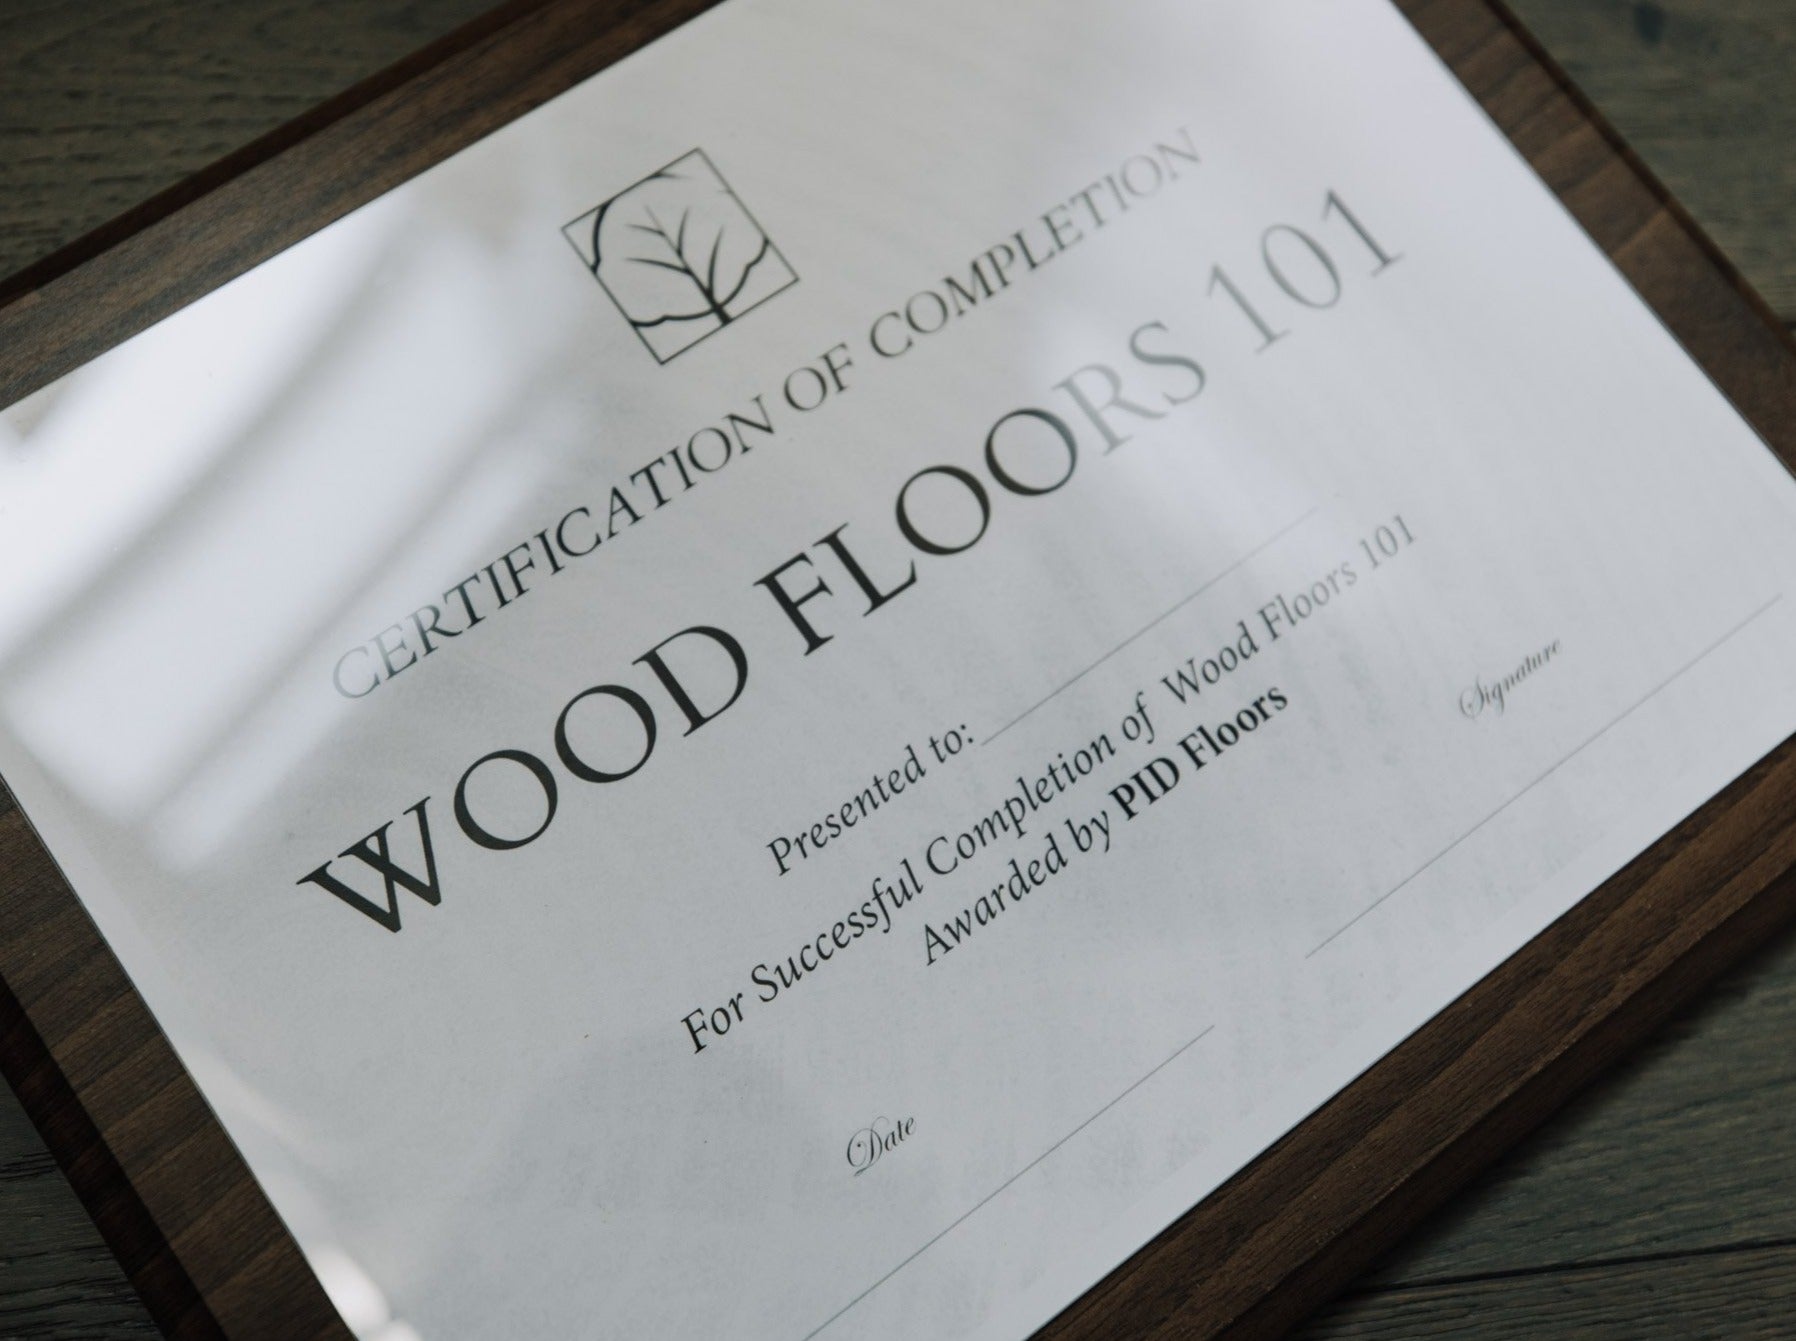 PID Courses: Wood Floors 101